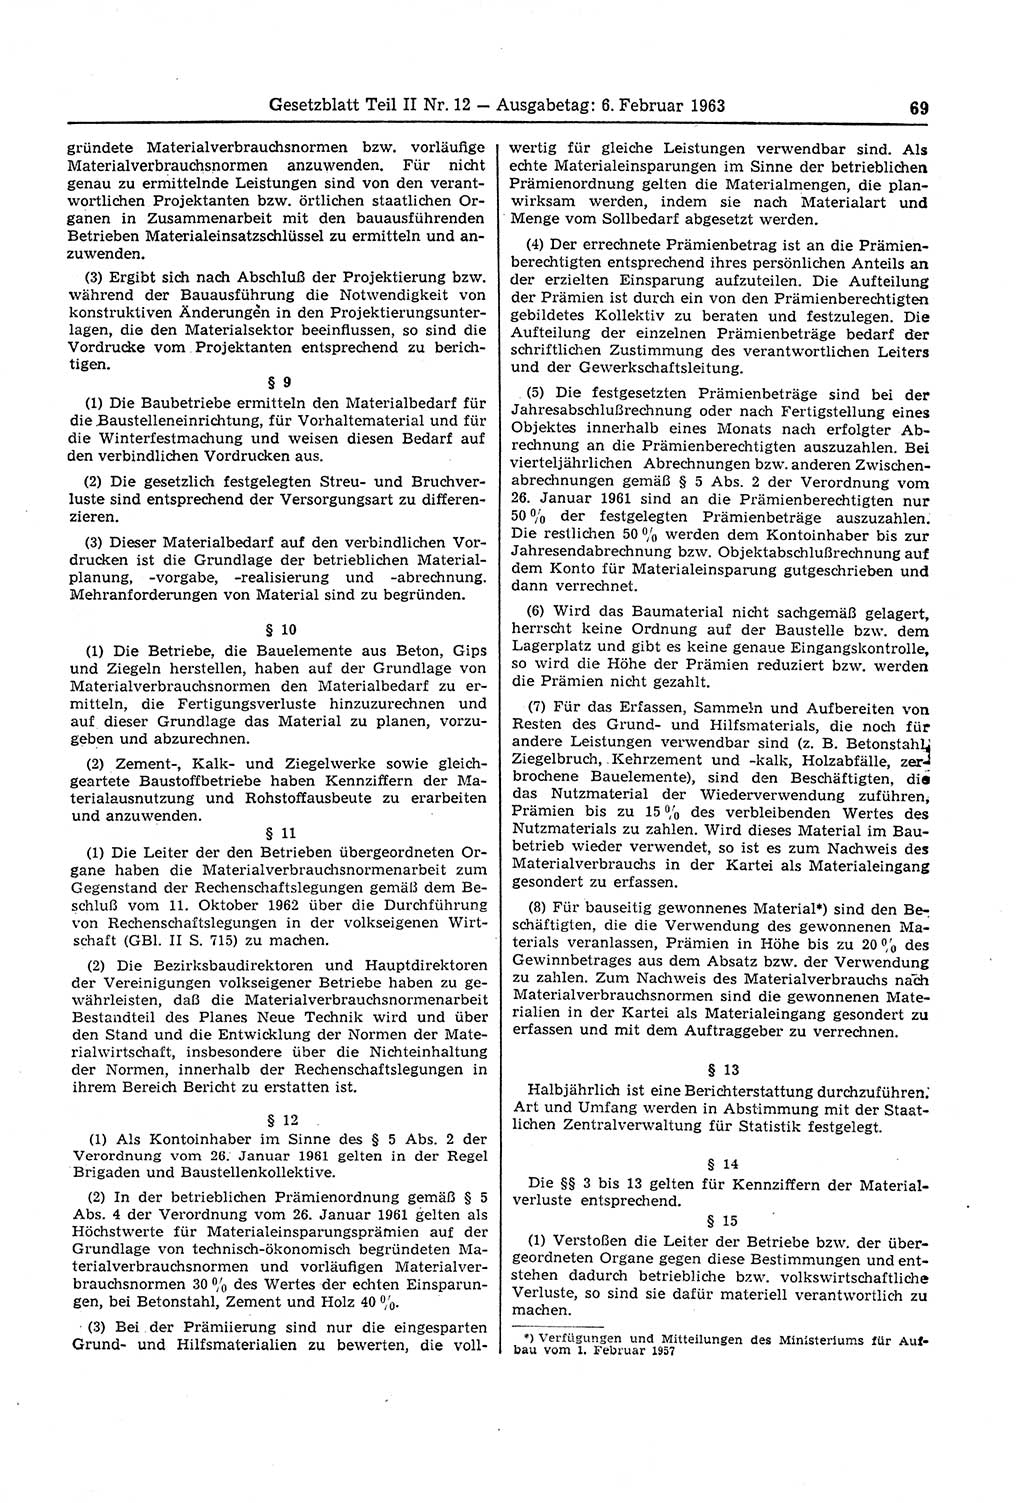 Gesetzblatt (GBl.) der Deutschen Demokratischen Republik (DDR) Teil ⅠⅠ 1963, Seite 69 (GBl. DDR ⅠⅠ 1963, S. 69)